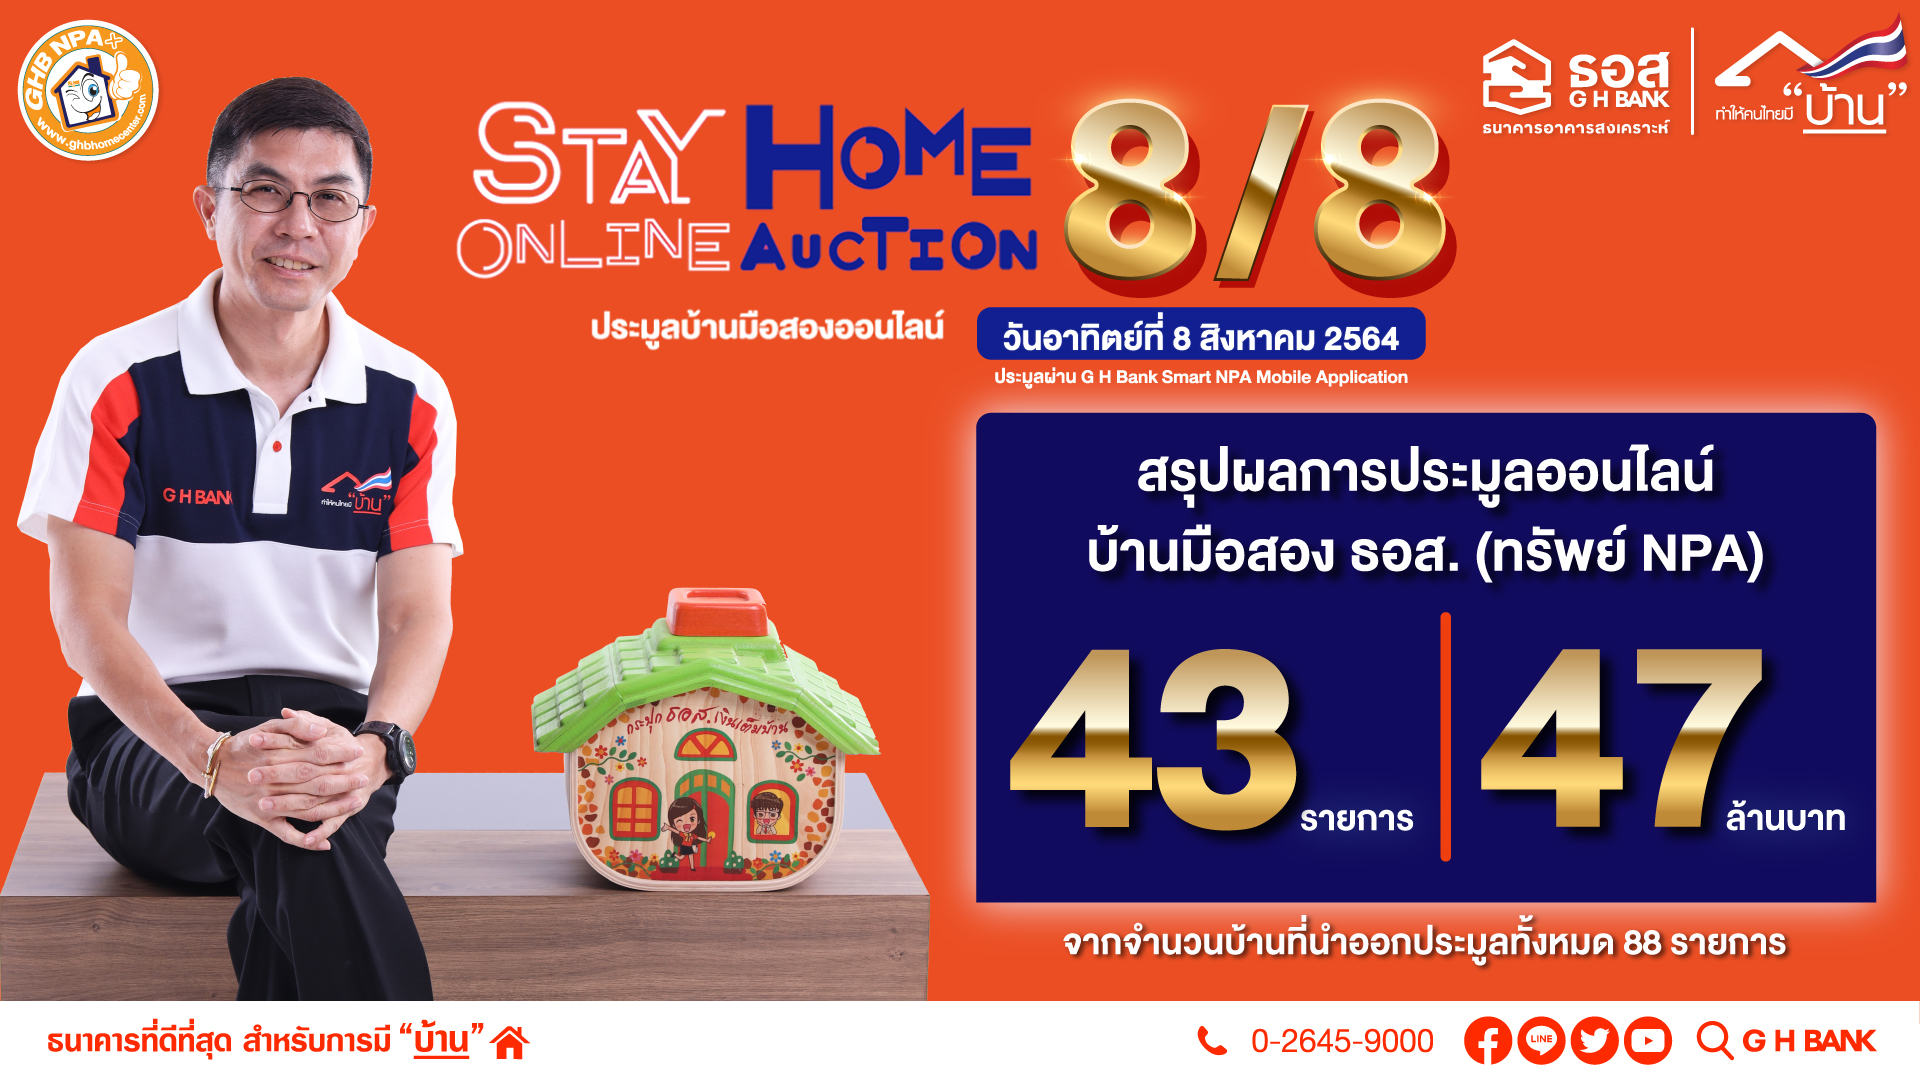 8/8 Stay Home Online Auction บ้านมือสอง ธอส. แค่ครึ่งชั่วโมง ขายได้ถึง 47 ล้านบาท